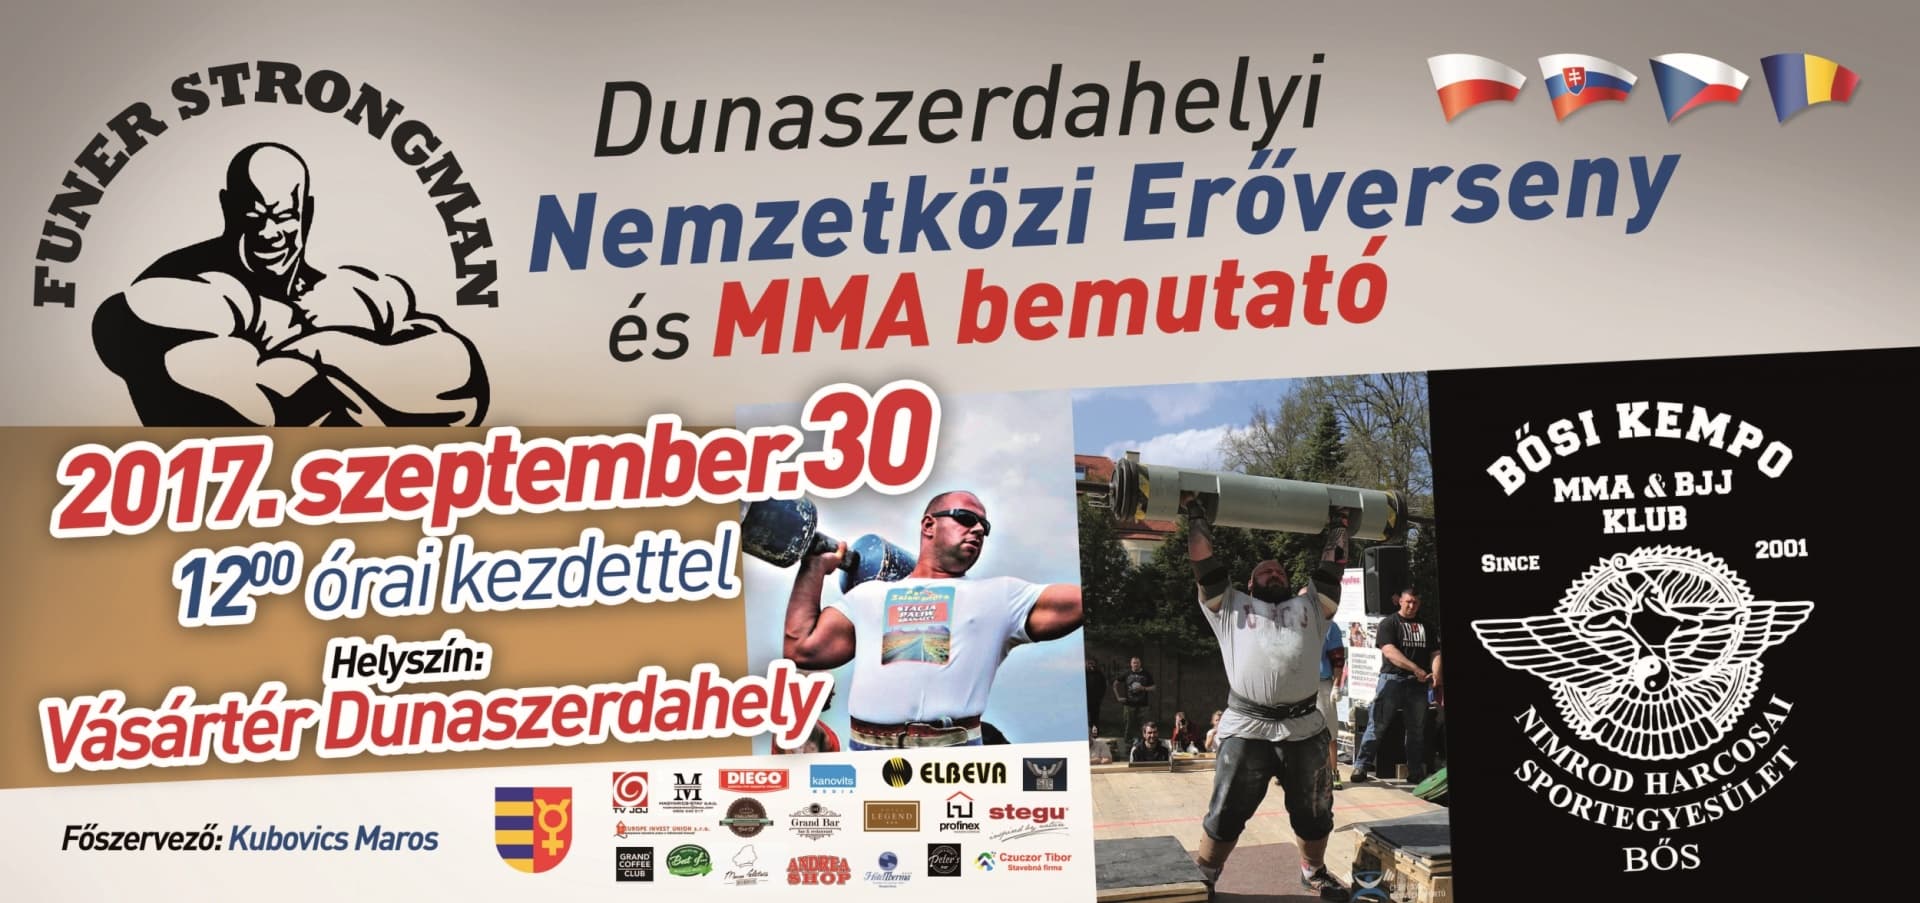 Nemzetközi erőverseny és MMA bemutató Dunaszerdahelyen!